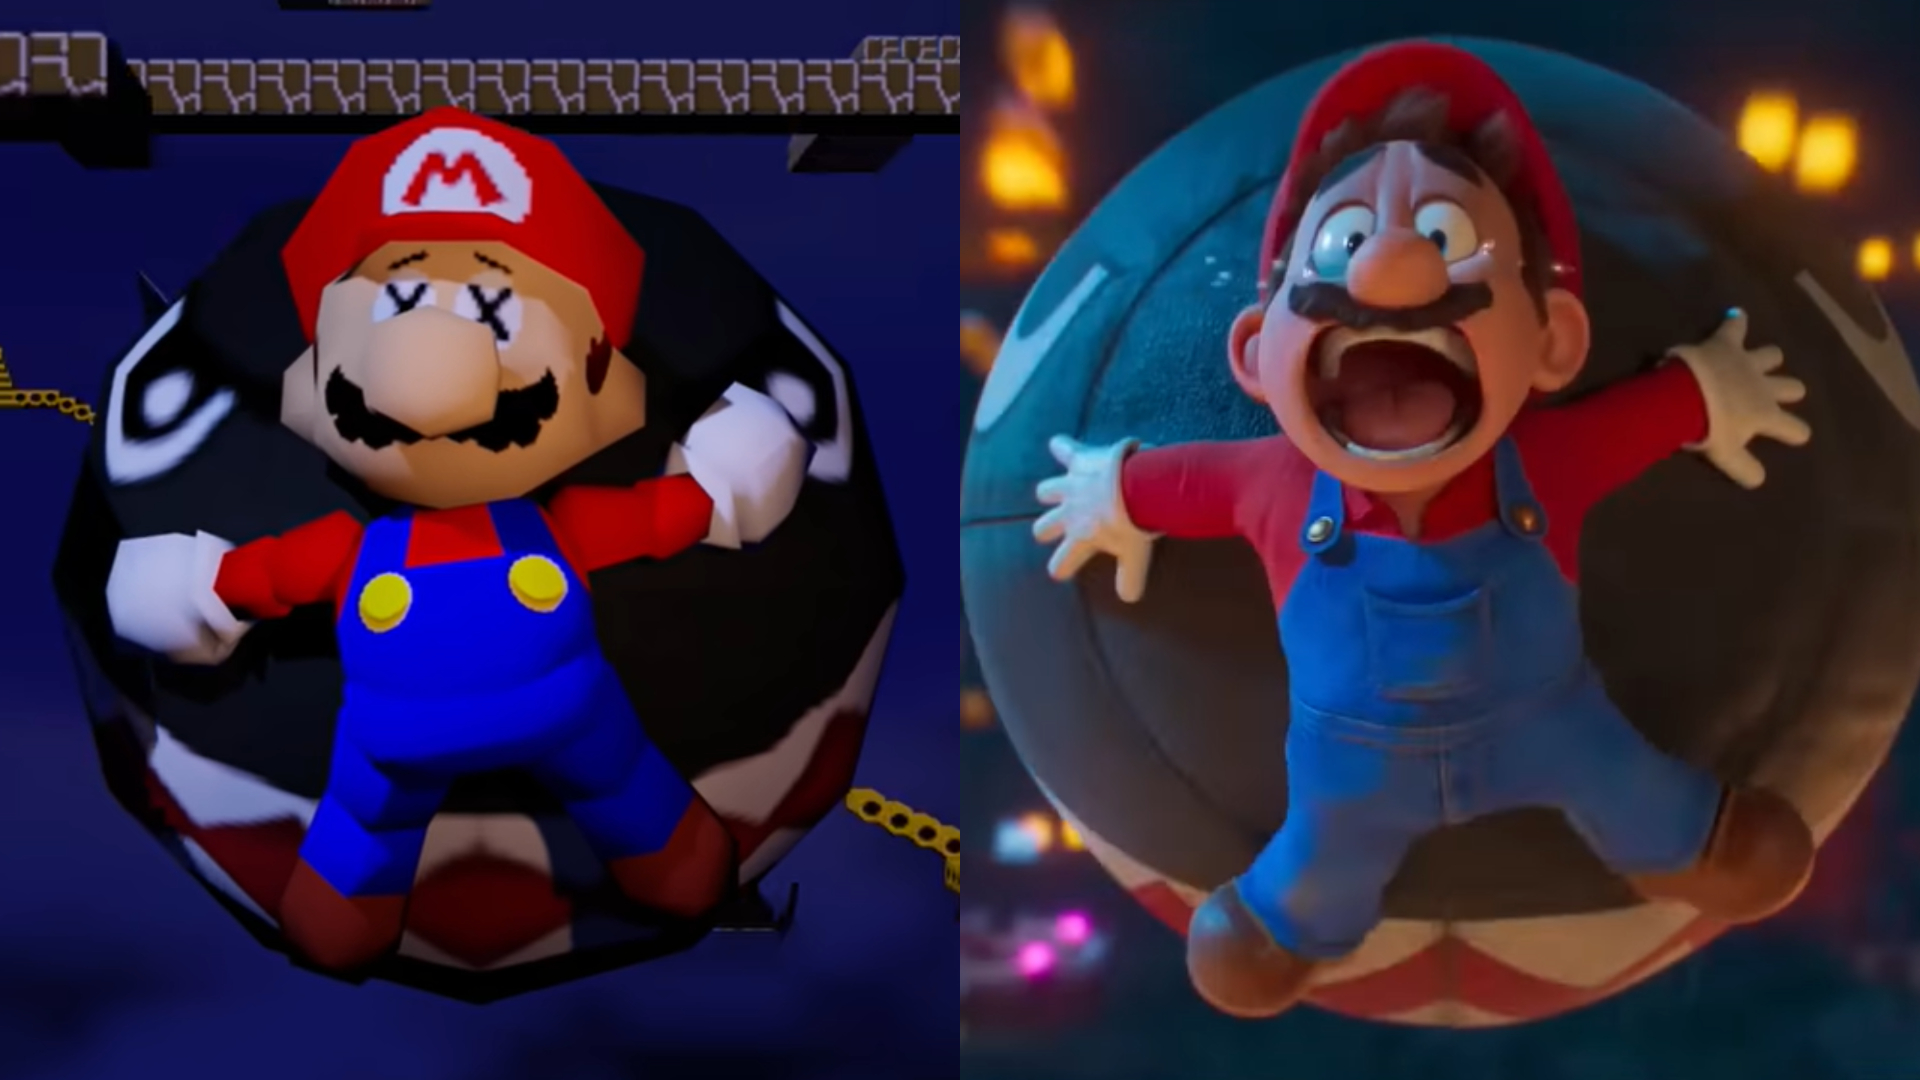 Filme do Mario chega no Brasil em 30 de março de 2023, revela